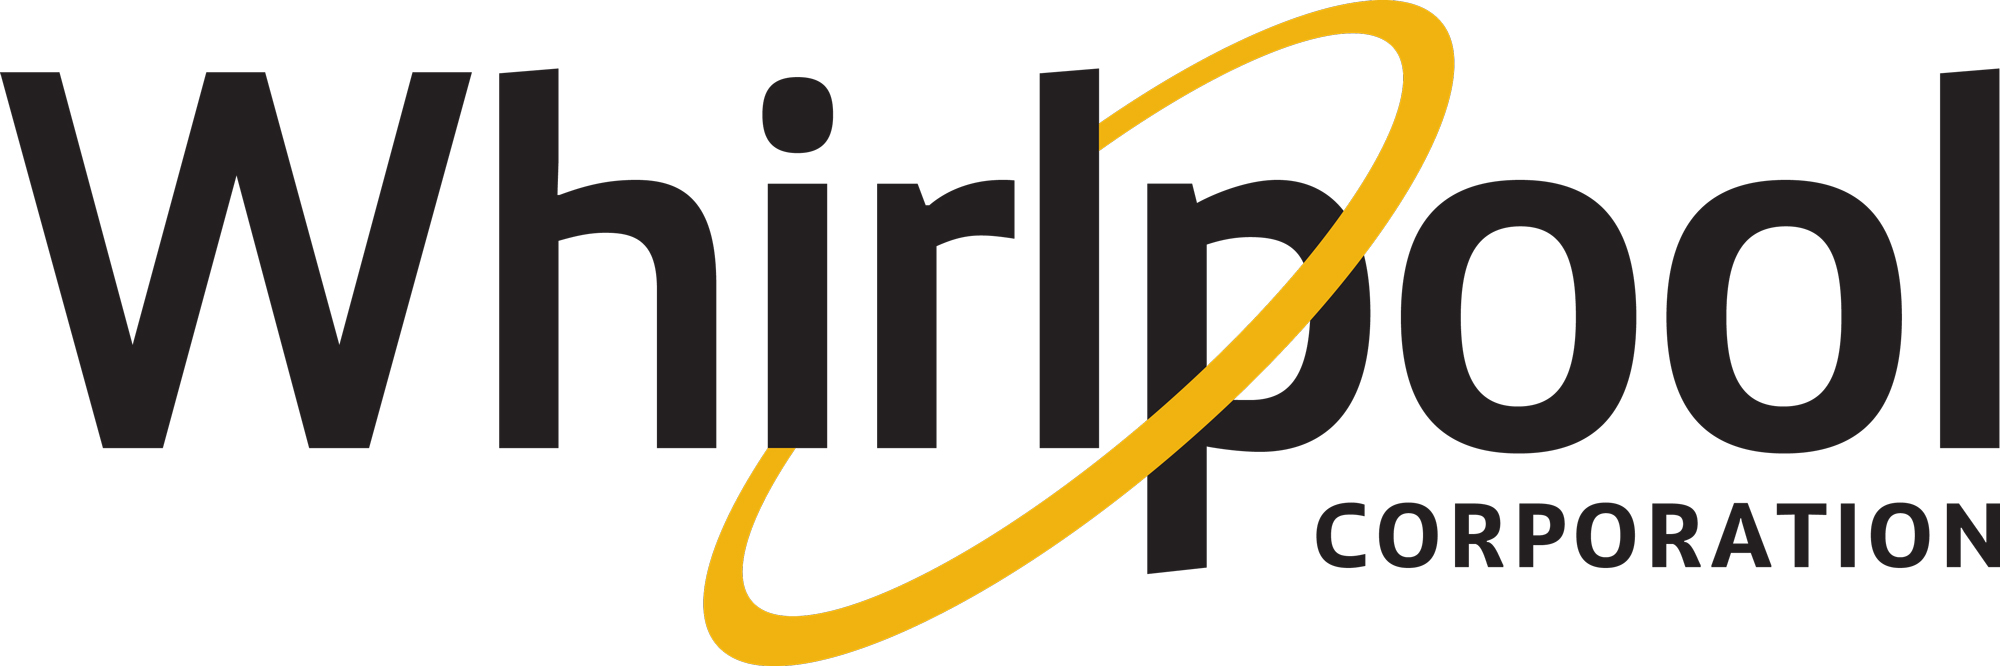 Risultati immagini per whirlpool corporation logo